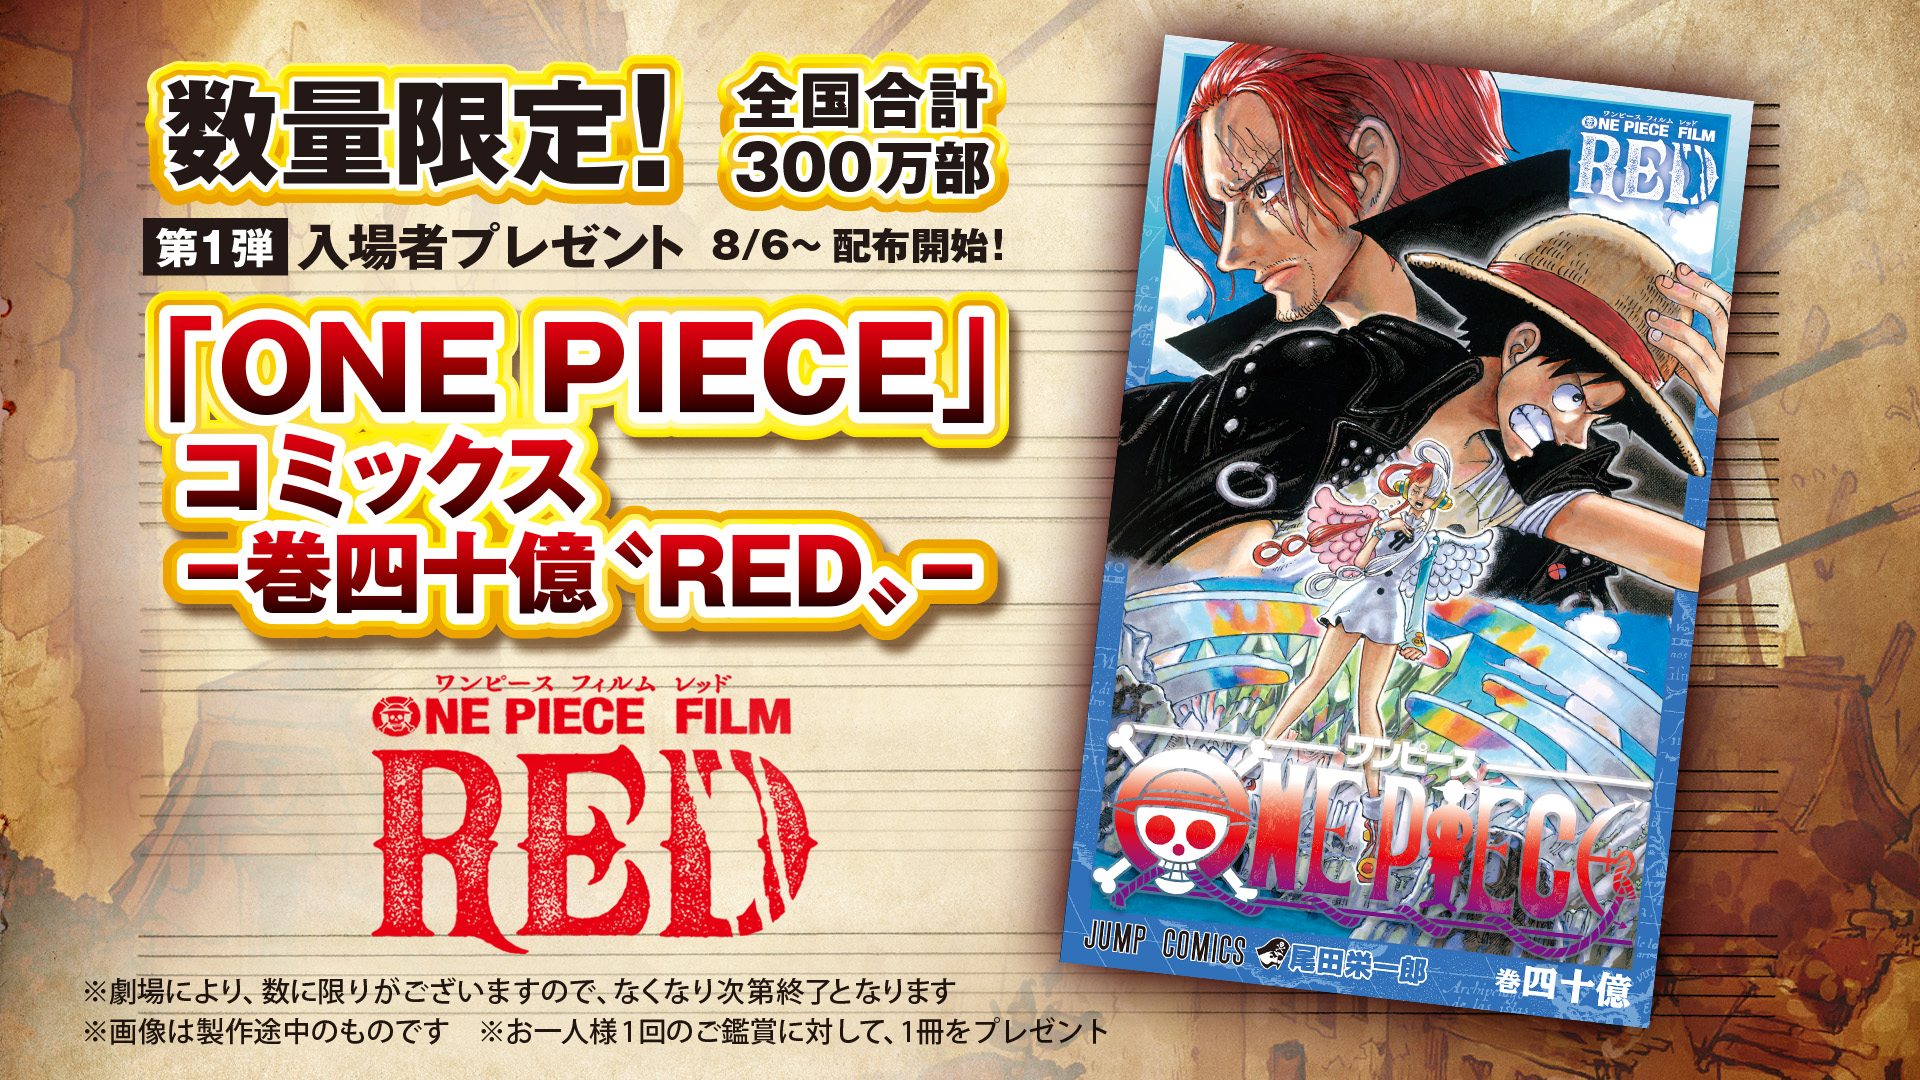 映画「ONE PIECE FILM RED」、入場者特典コミックス「-巻四十億“RED